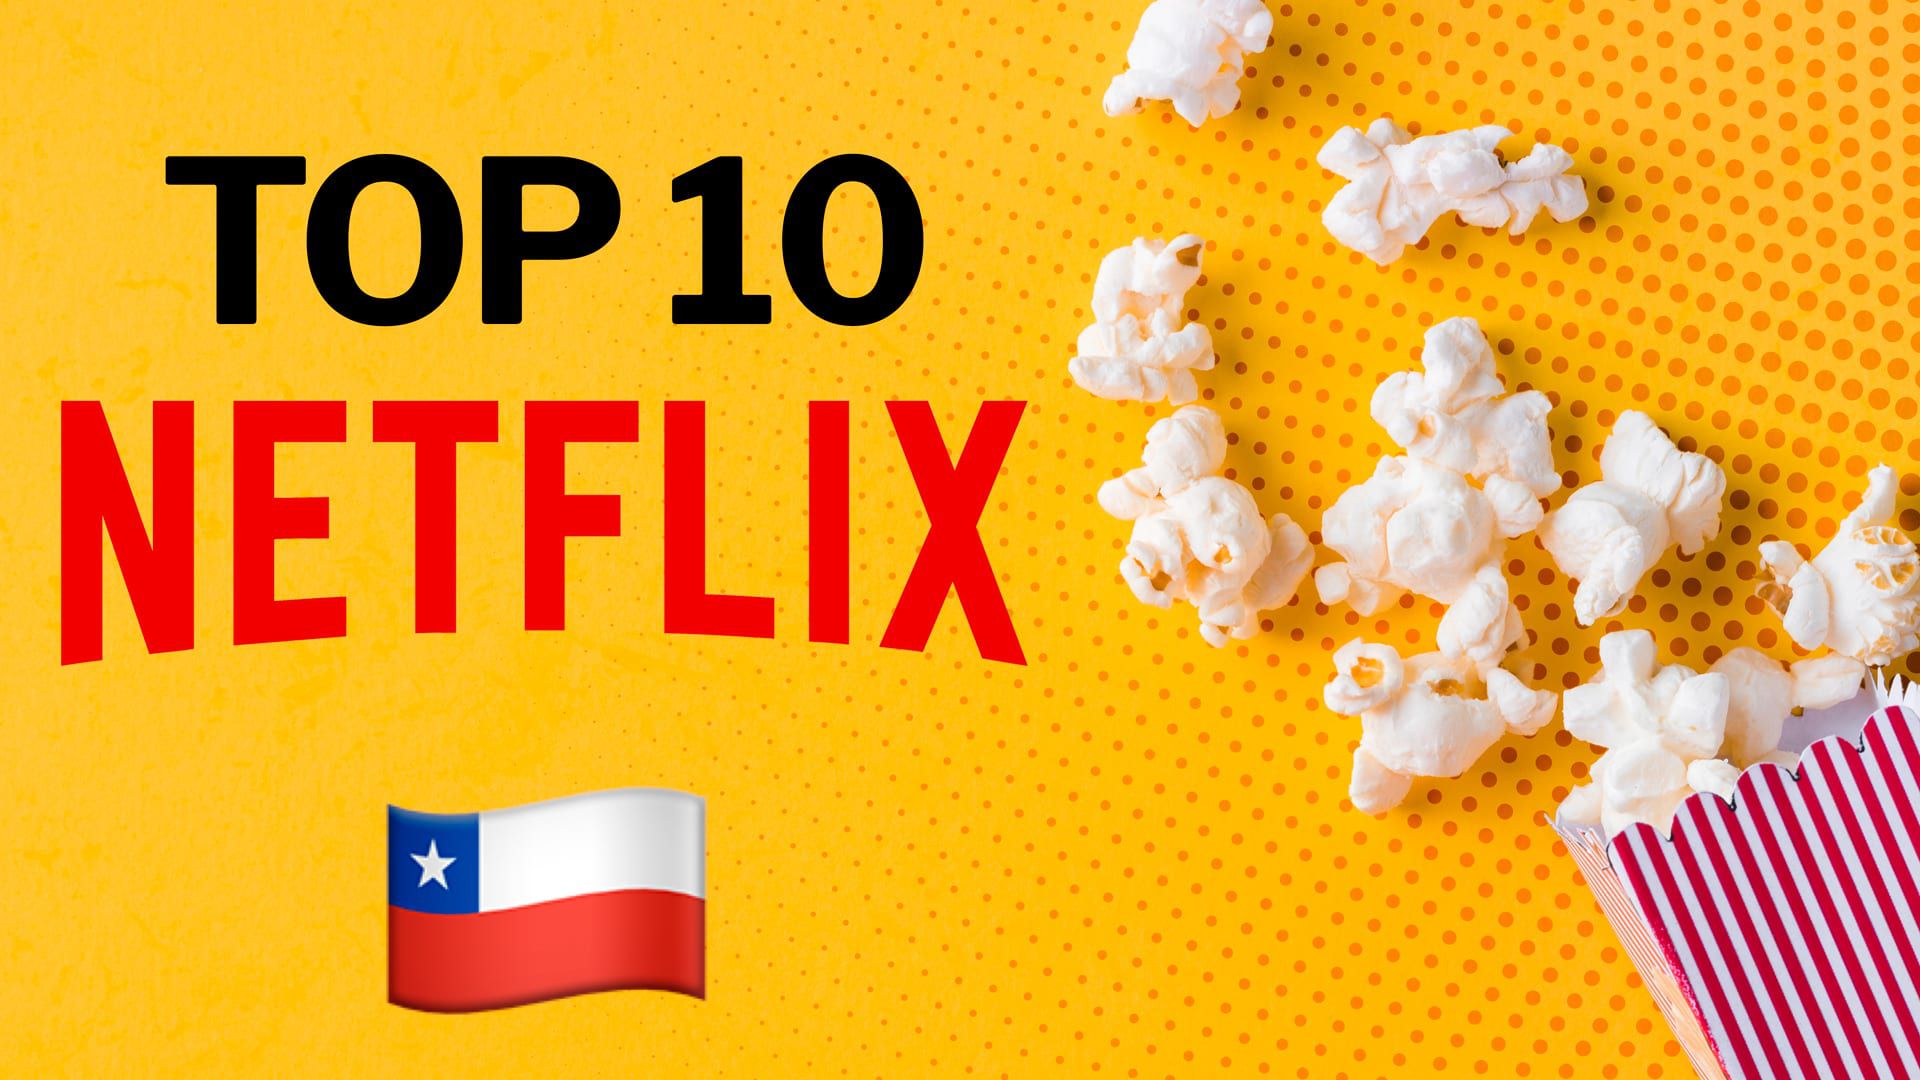 Más de una docena de servicios de streaming compiten de forma feroz para ser los reyes del mercado, entre ellos Netflix. (Infobae)